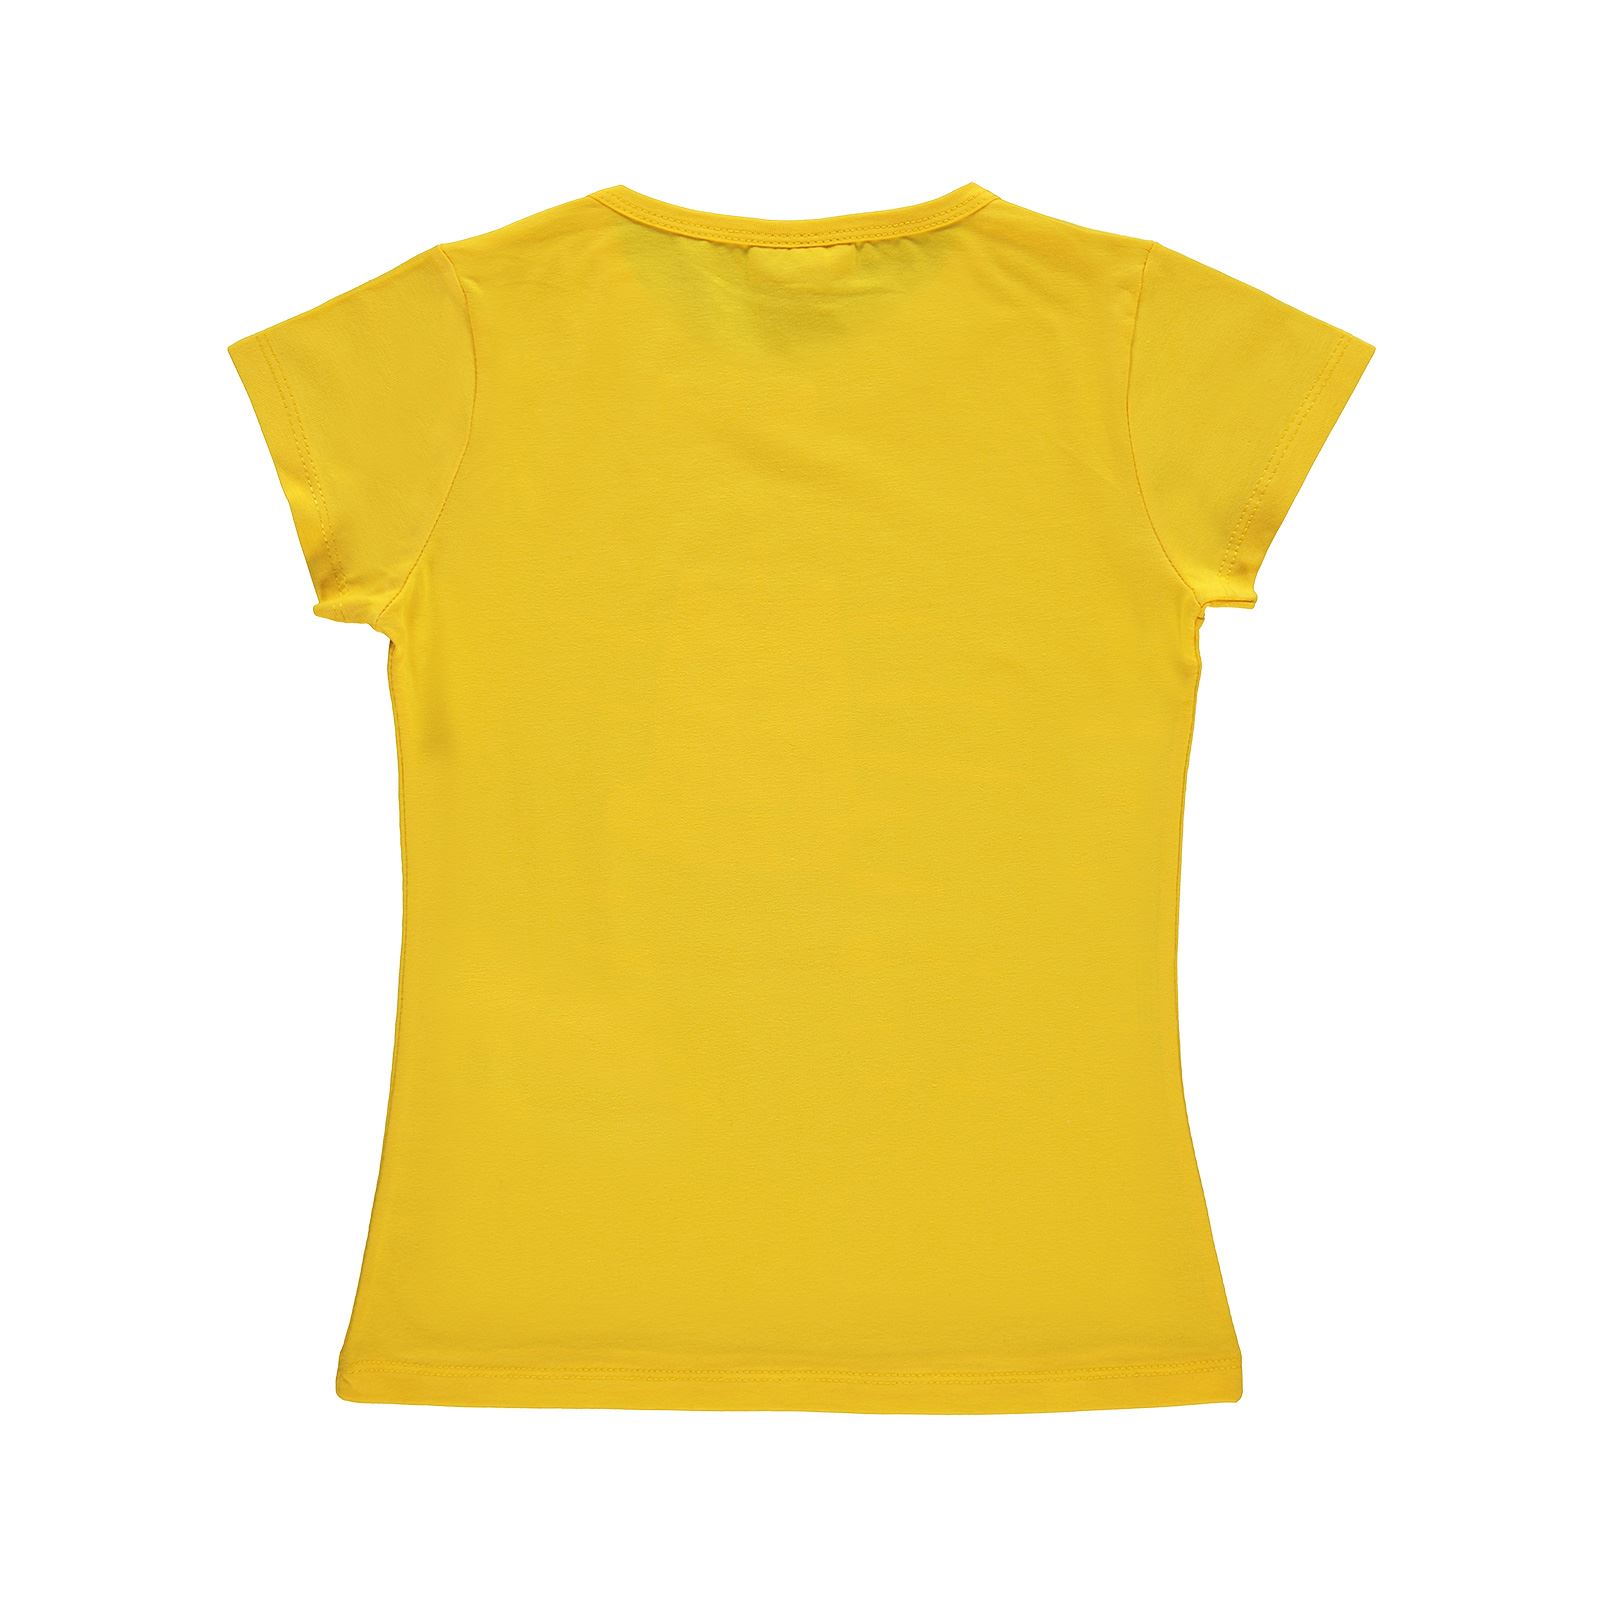 P&P Kız Çocuk Tişört 6-9 Yaş Sarı